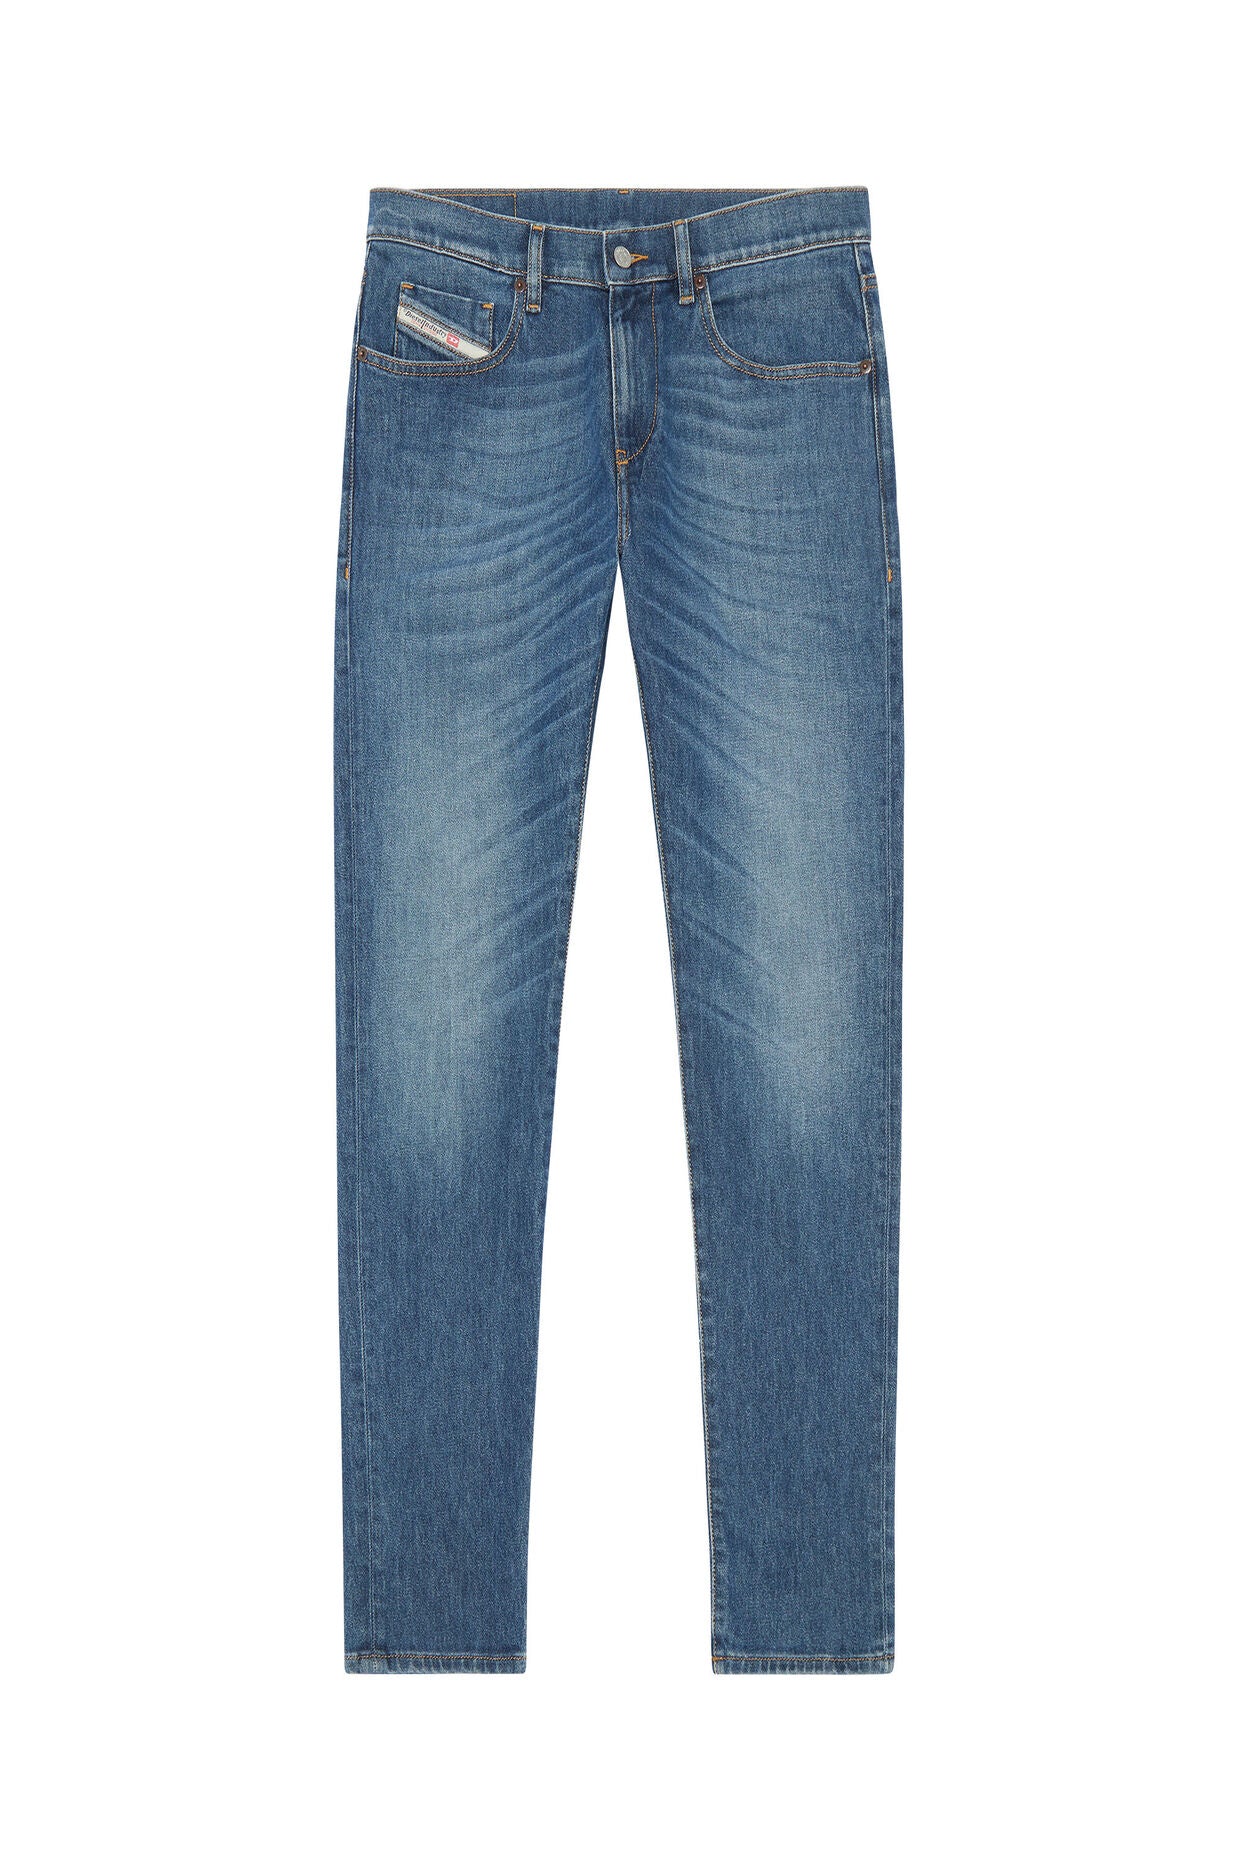 Diesel D-Strukt Jeans - Mid Wash / 2 Lengths